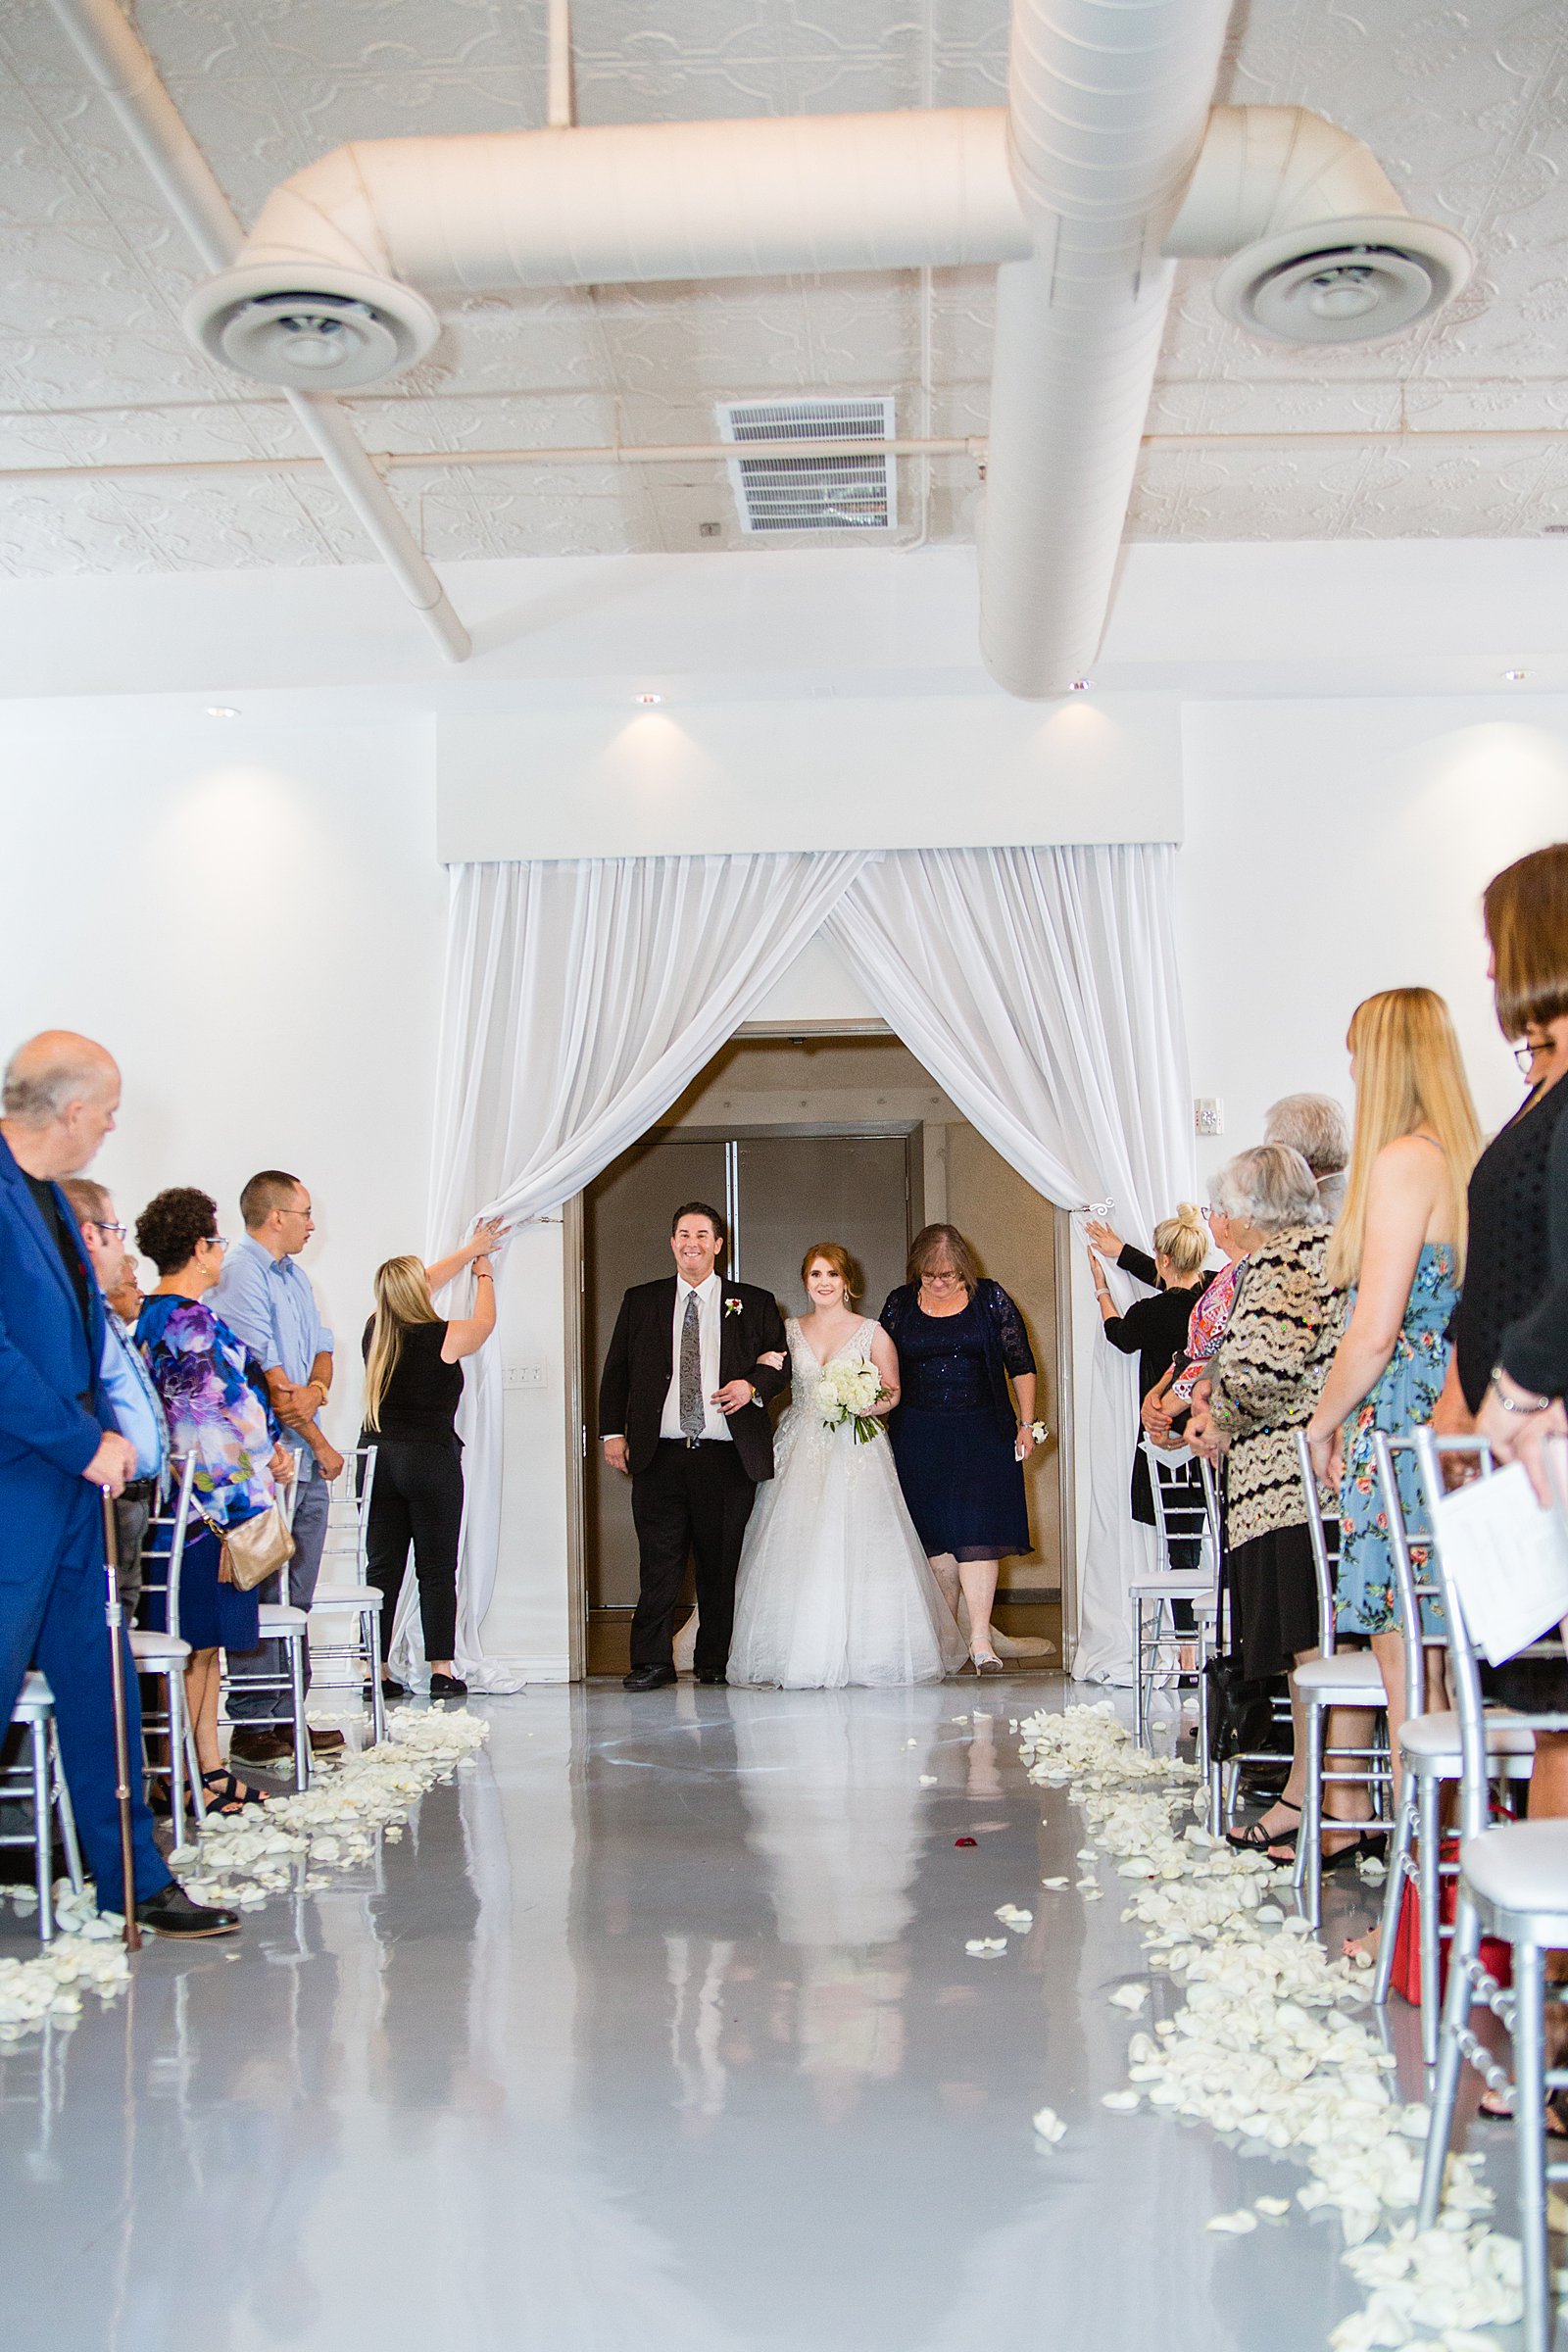 Bride walking down aisle during SoHo63 wedding ceremony by Phoenix wedding photographer PMA Photography.